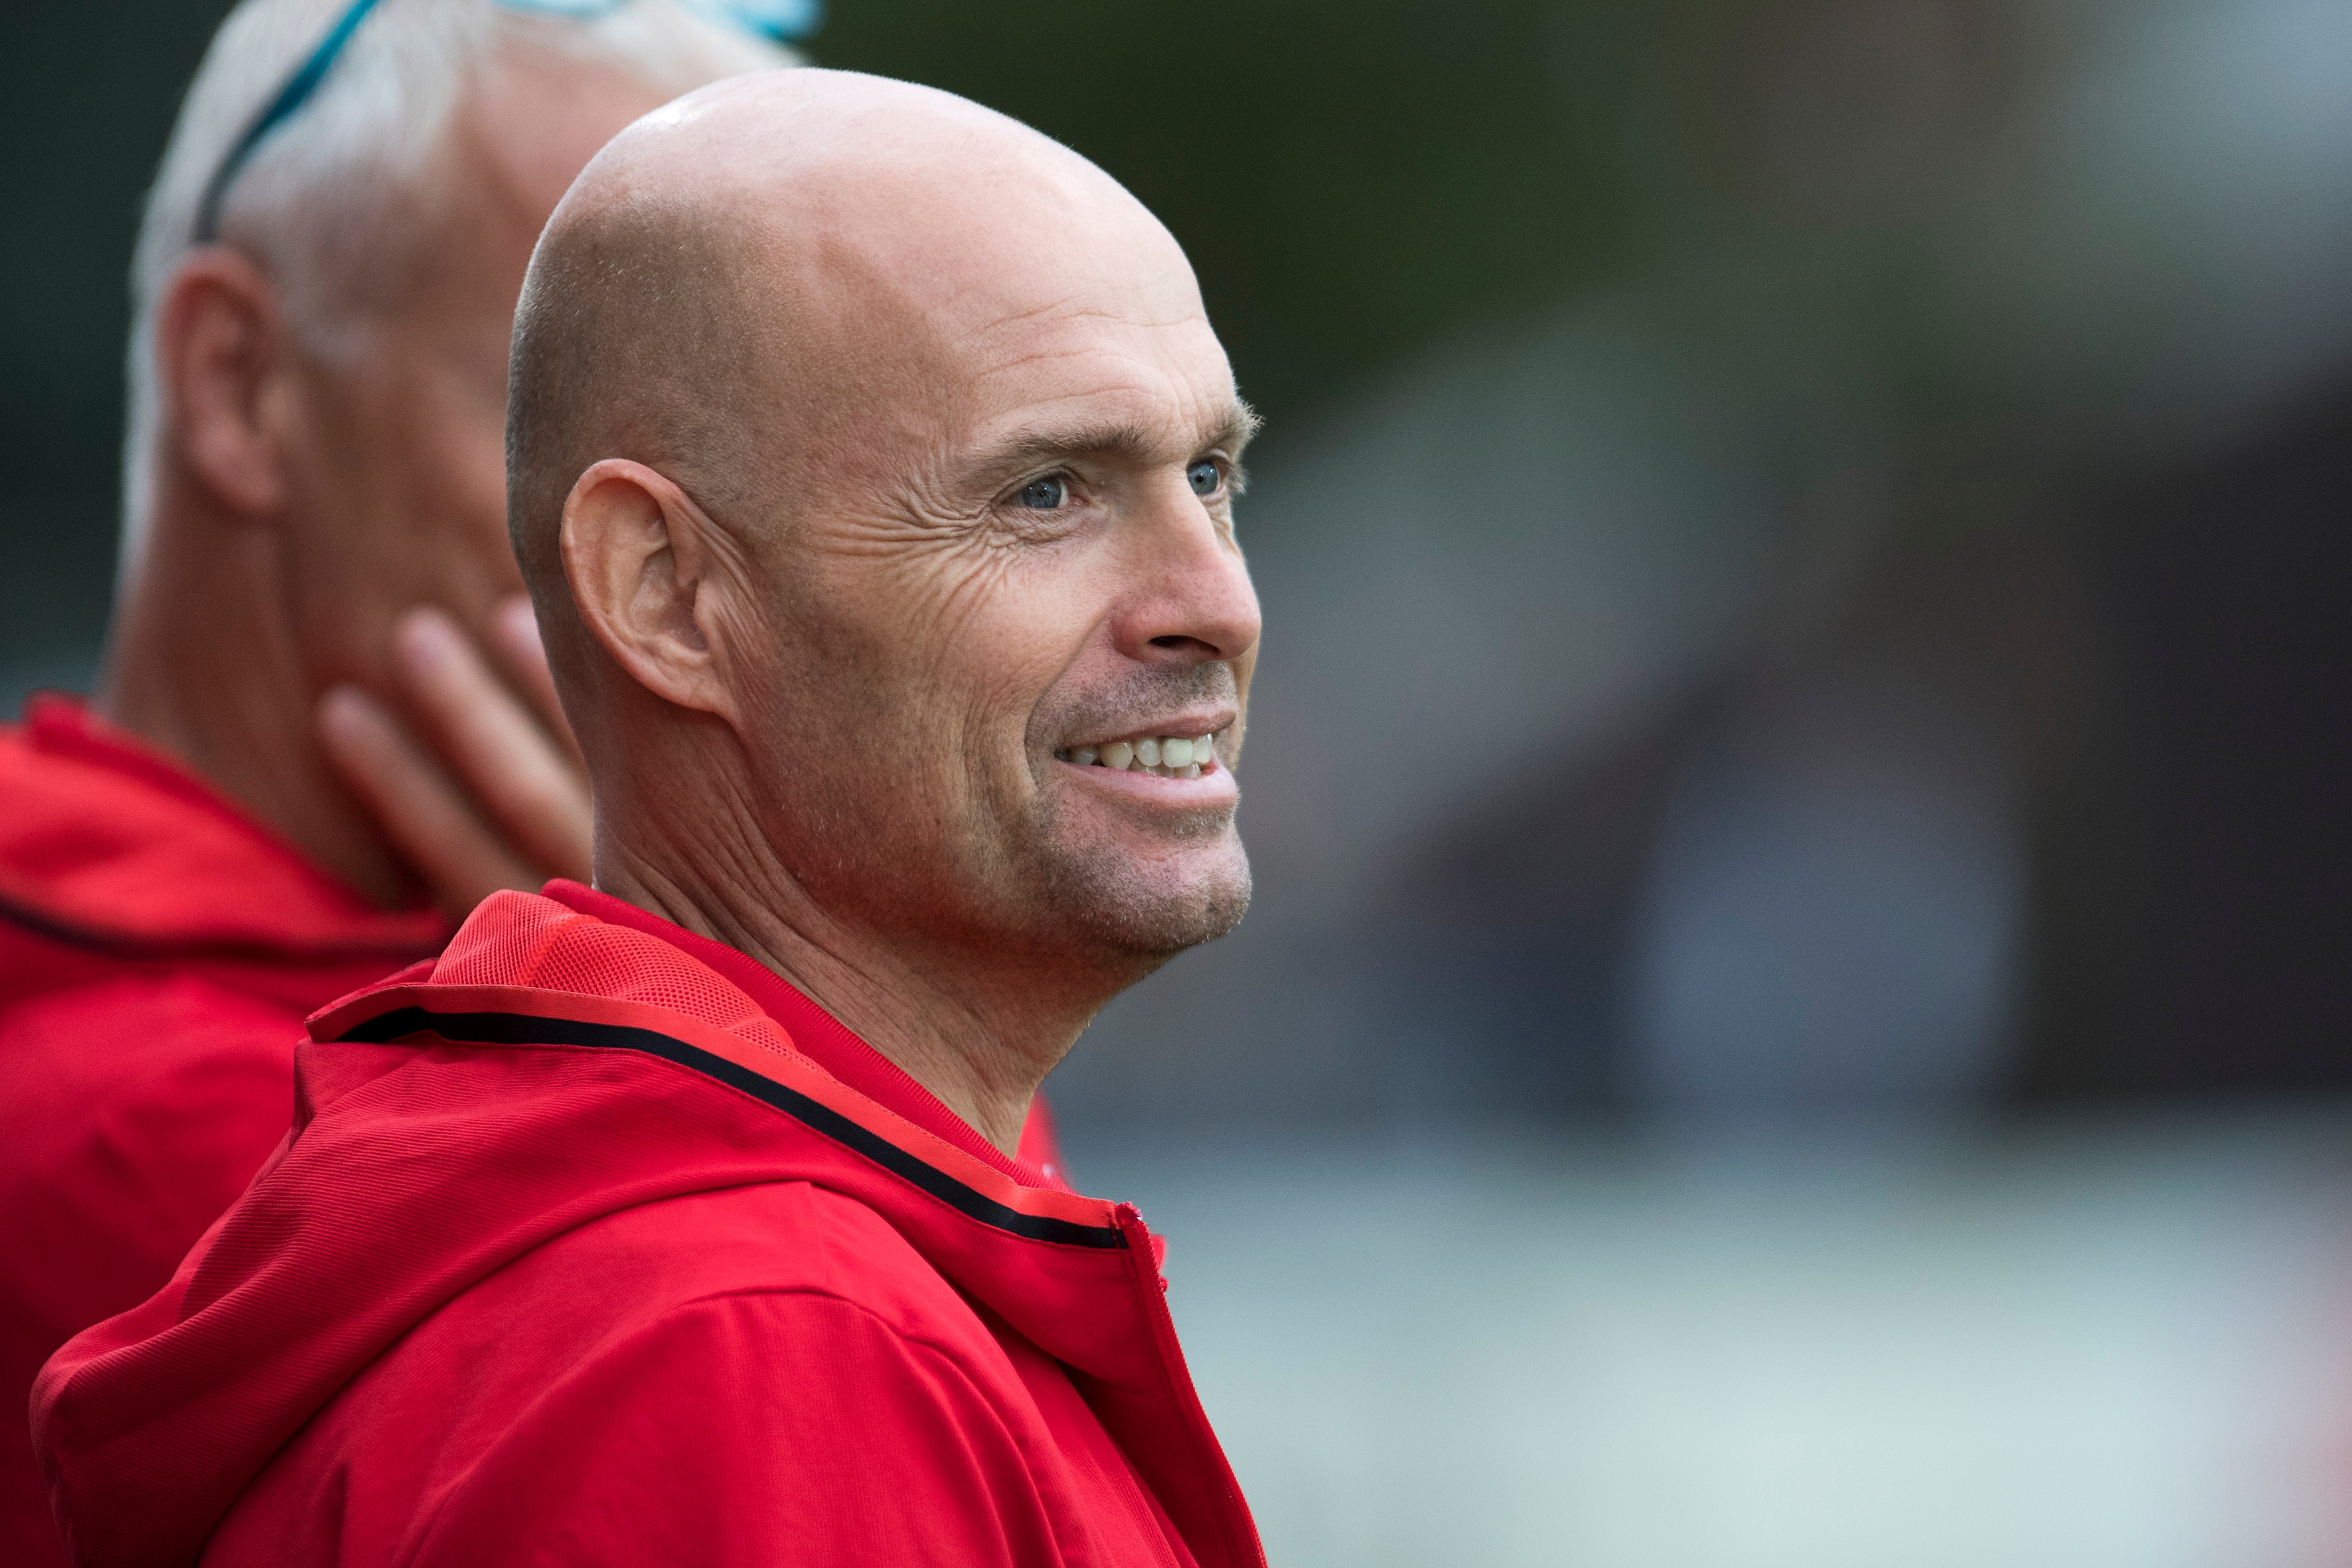 El técnico del filial Marcel Keizer se convierte en entrenador del equipo de Amsterdam. Ajax